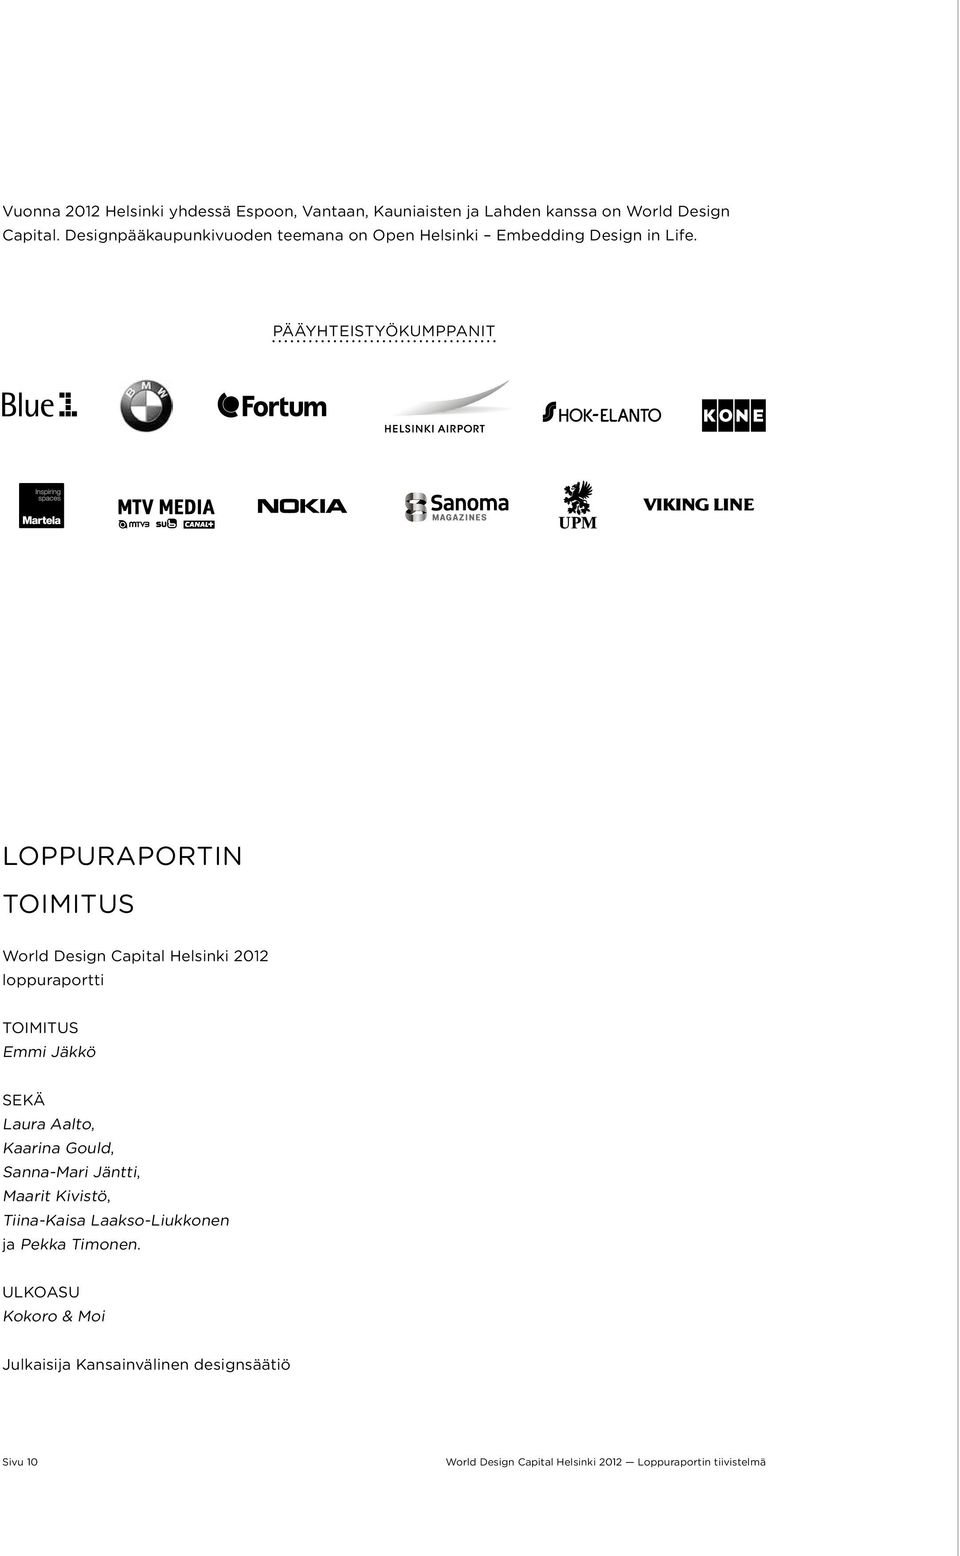 Pääyhteistyökumppanit Loppuraportin toimitus World Design Capital Helsinki 2012 loppuraportti Toimitus Emmi Jäkkö